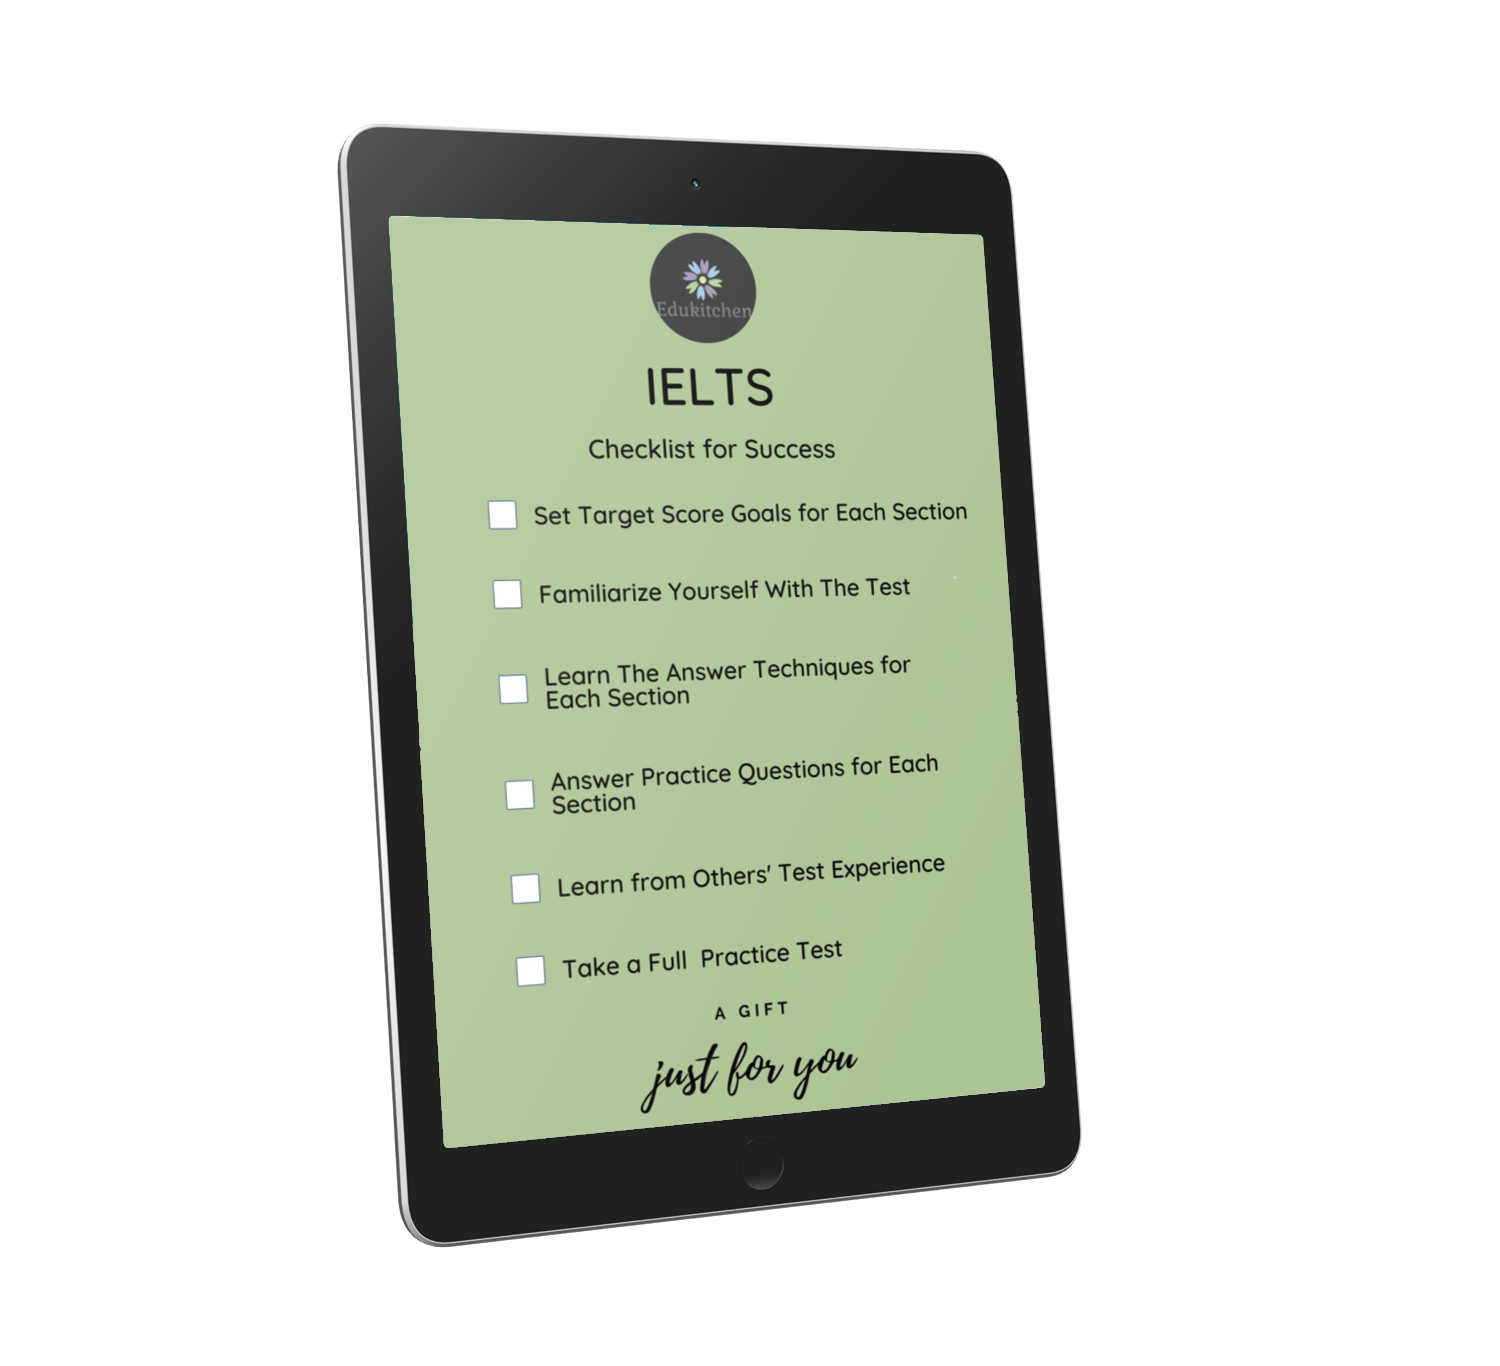 IELTS course checklist